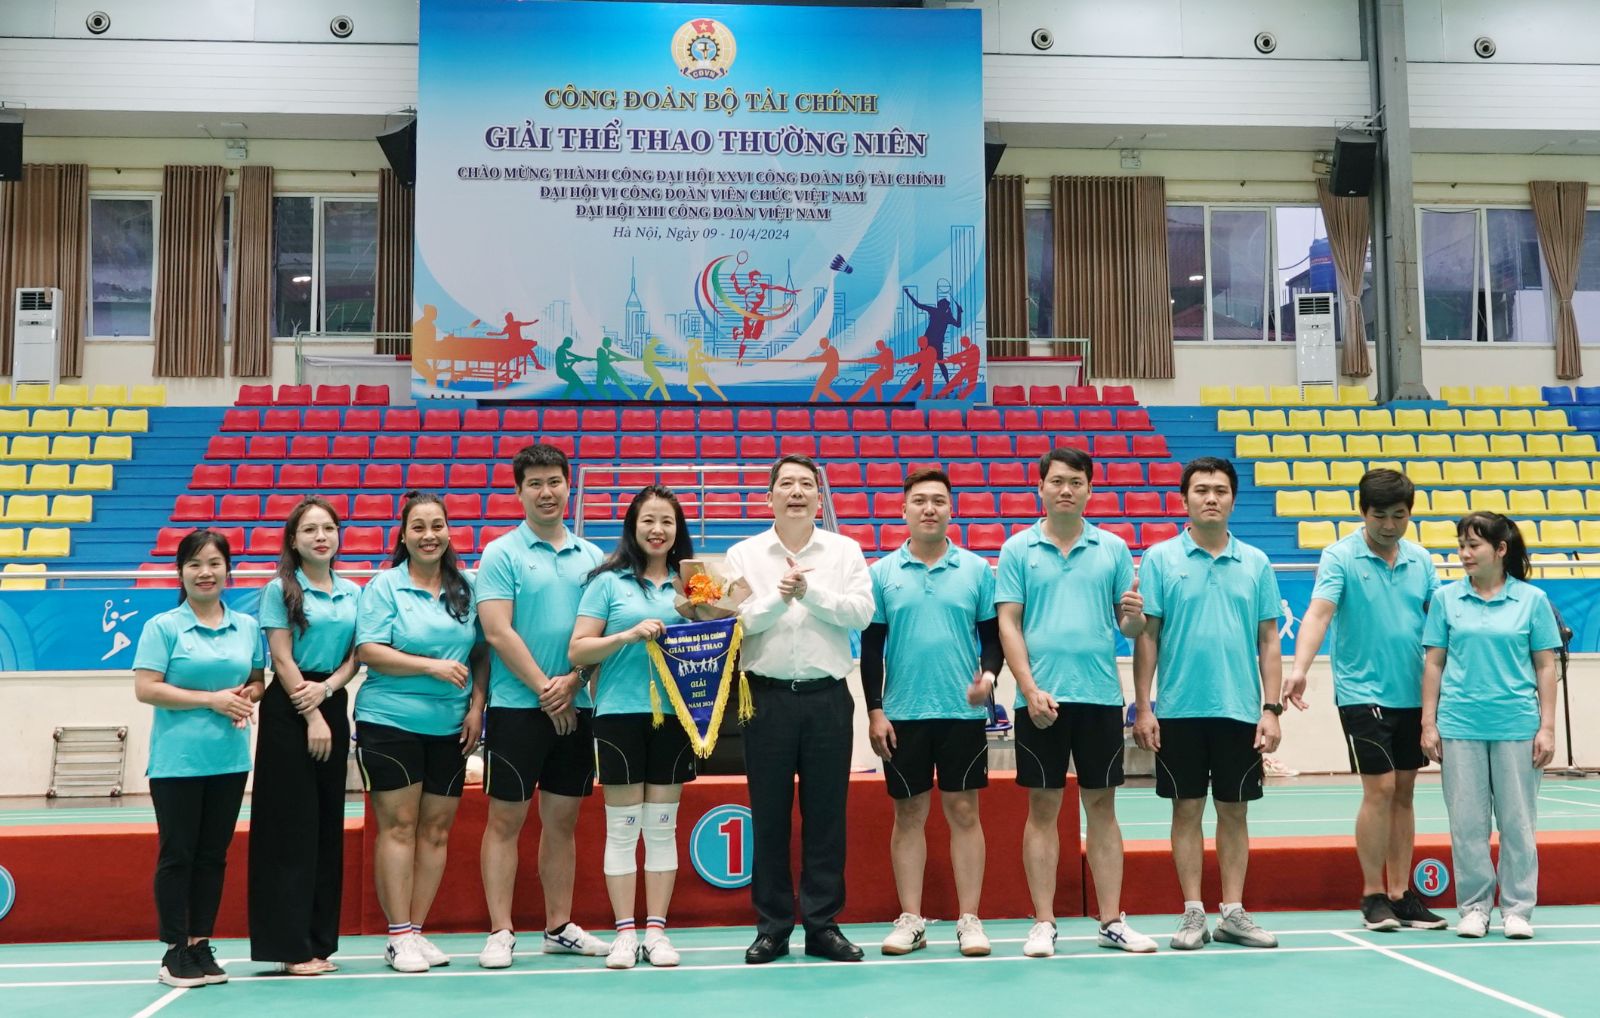 Thứ trưởng Cao Anh Tuấn trao giải Nhì môn Kéo co cho các vận động viên đến từ Văn phòng Bộ